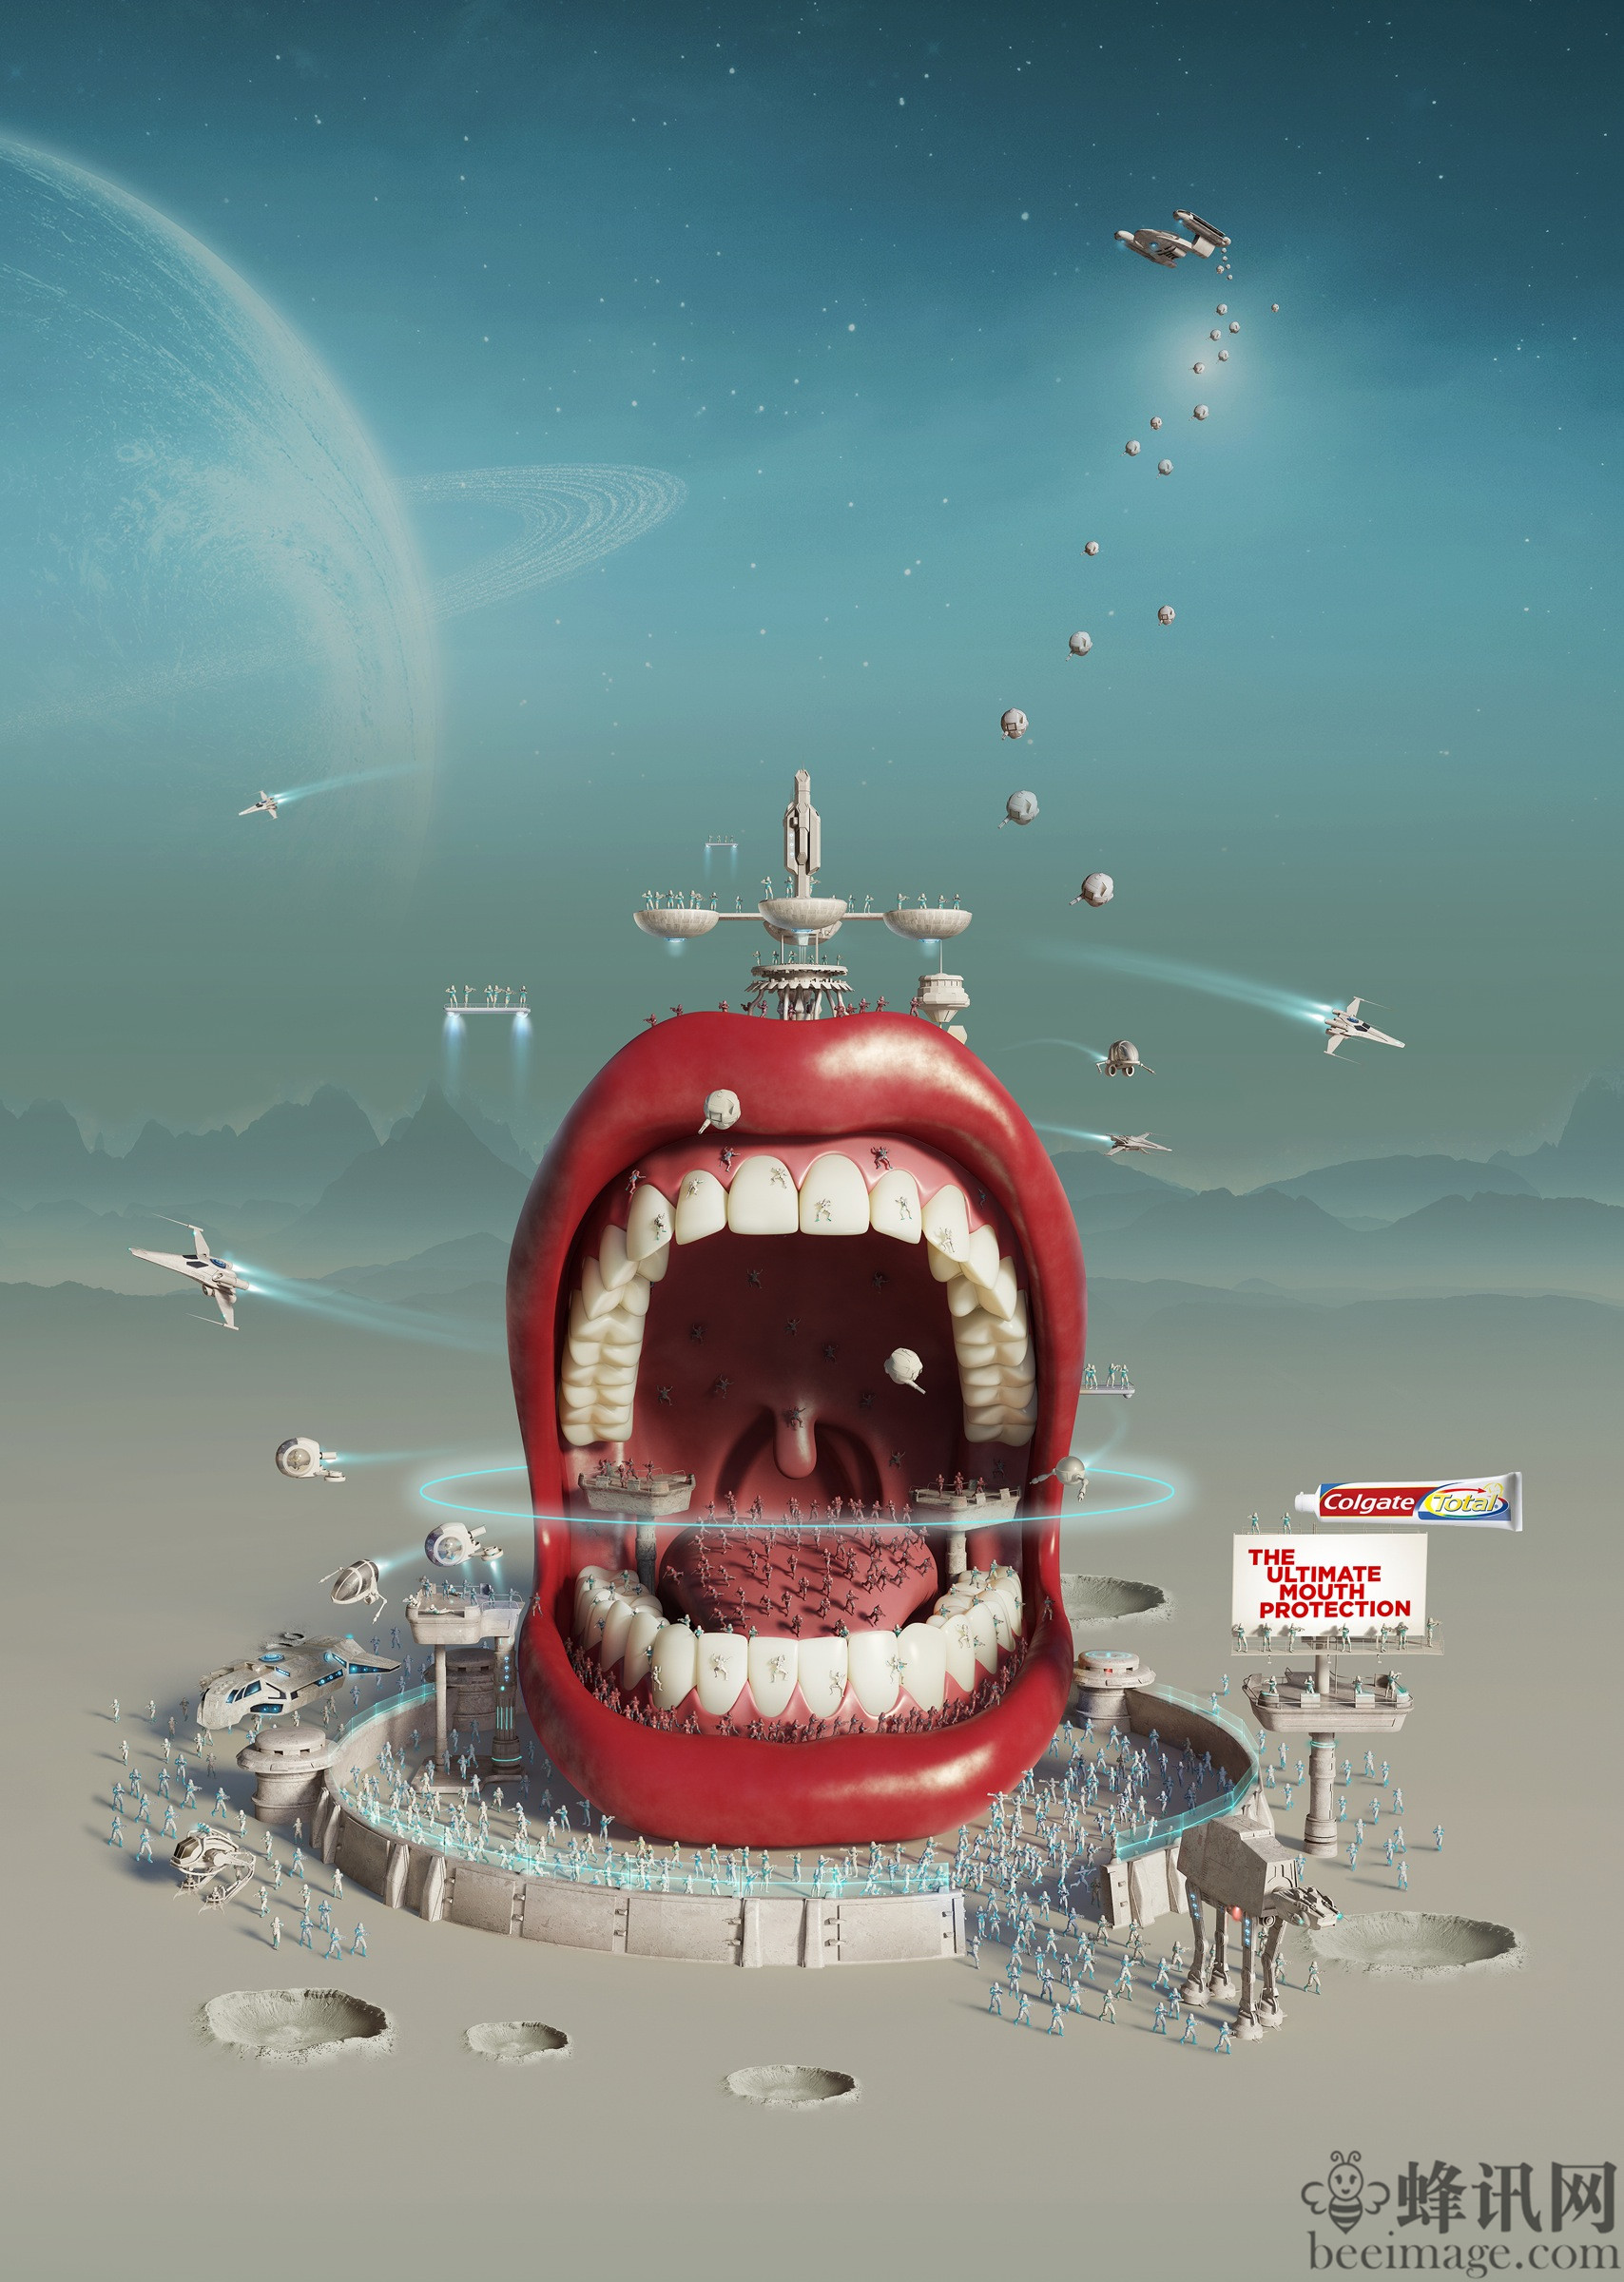 美国牙膏创意海报设计colgate(高露洁):最强护口